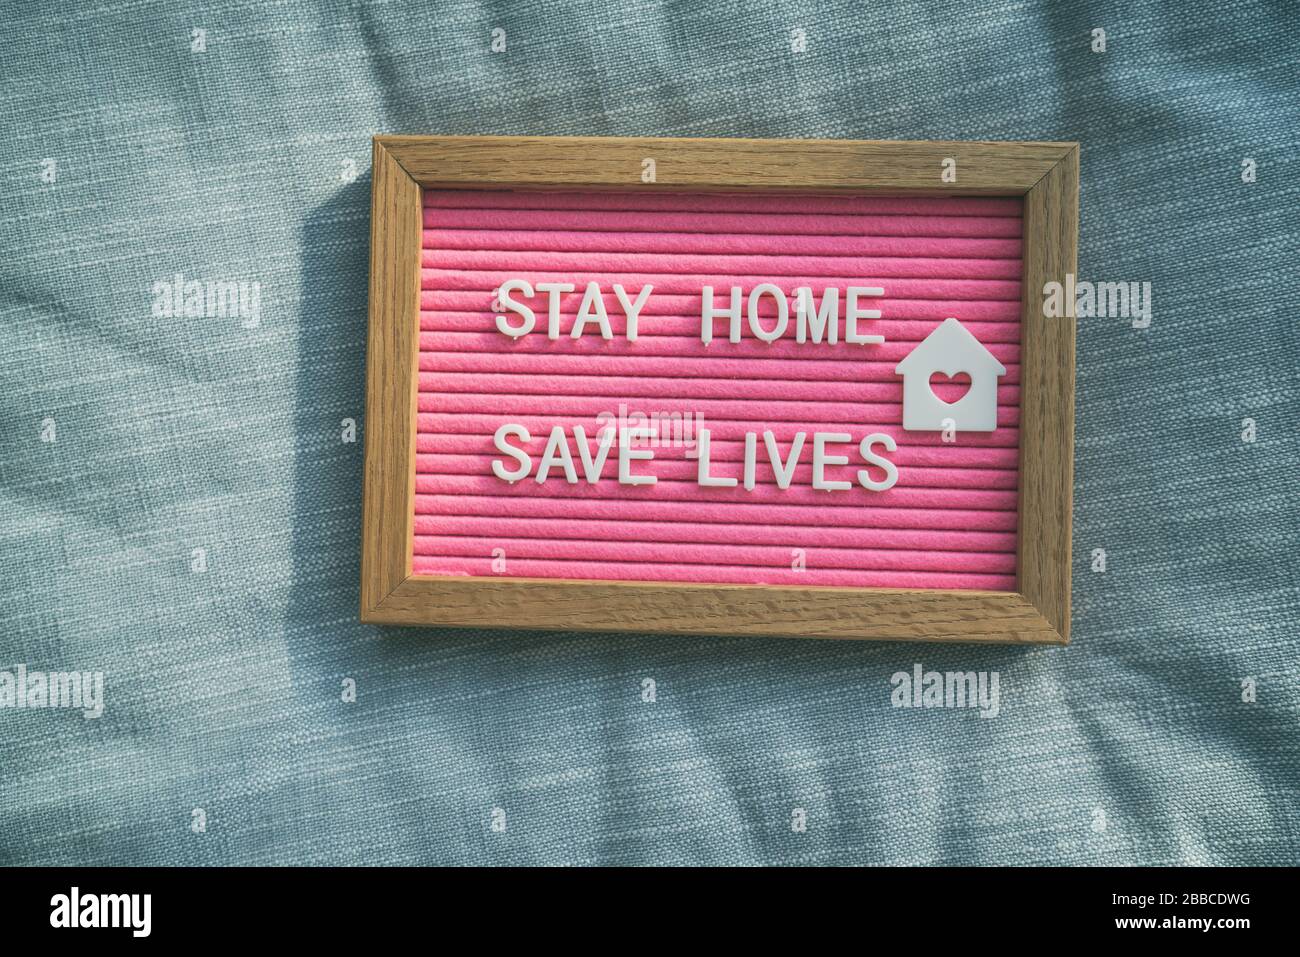 Coronavirus Angebot bleiben Sie zu Hause, retten Sie Leben rosafarbenes Filzbrettzeichen mit der Botschaft der Selbstisolierung für soziale Verantwortung auf dem Heimsofa-Hintergrund. COVID-19-Text zur Förderung des Aufenthalts zu Hause. Stockfoto